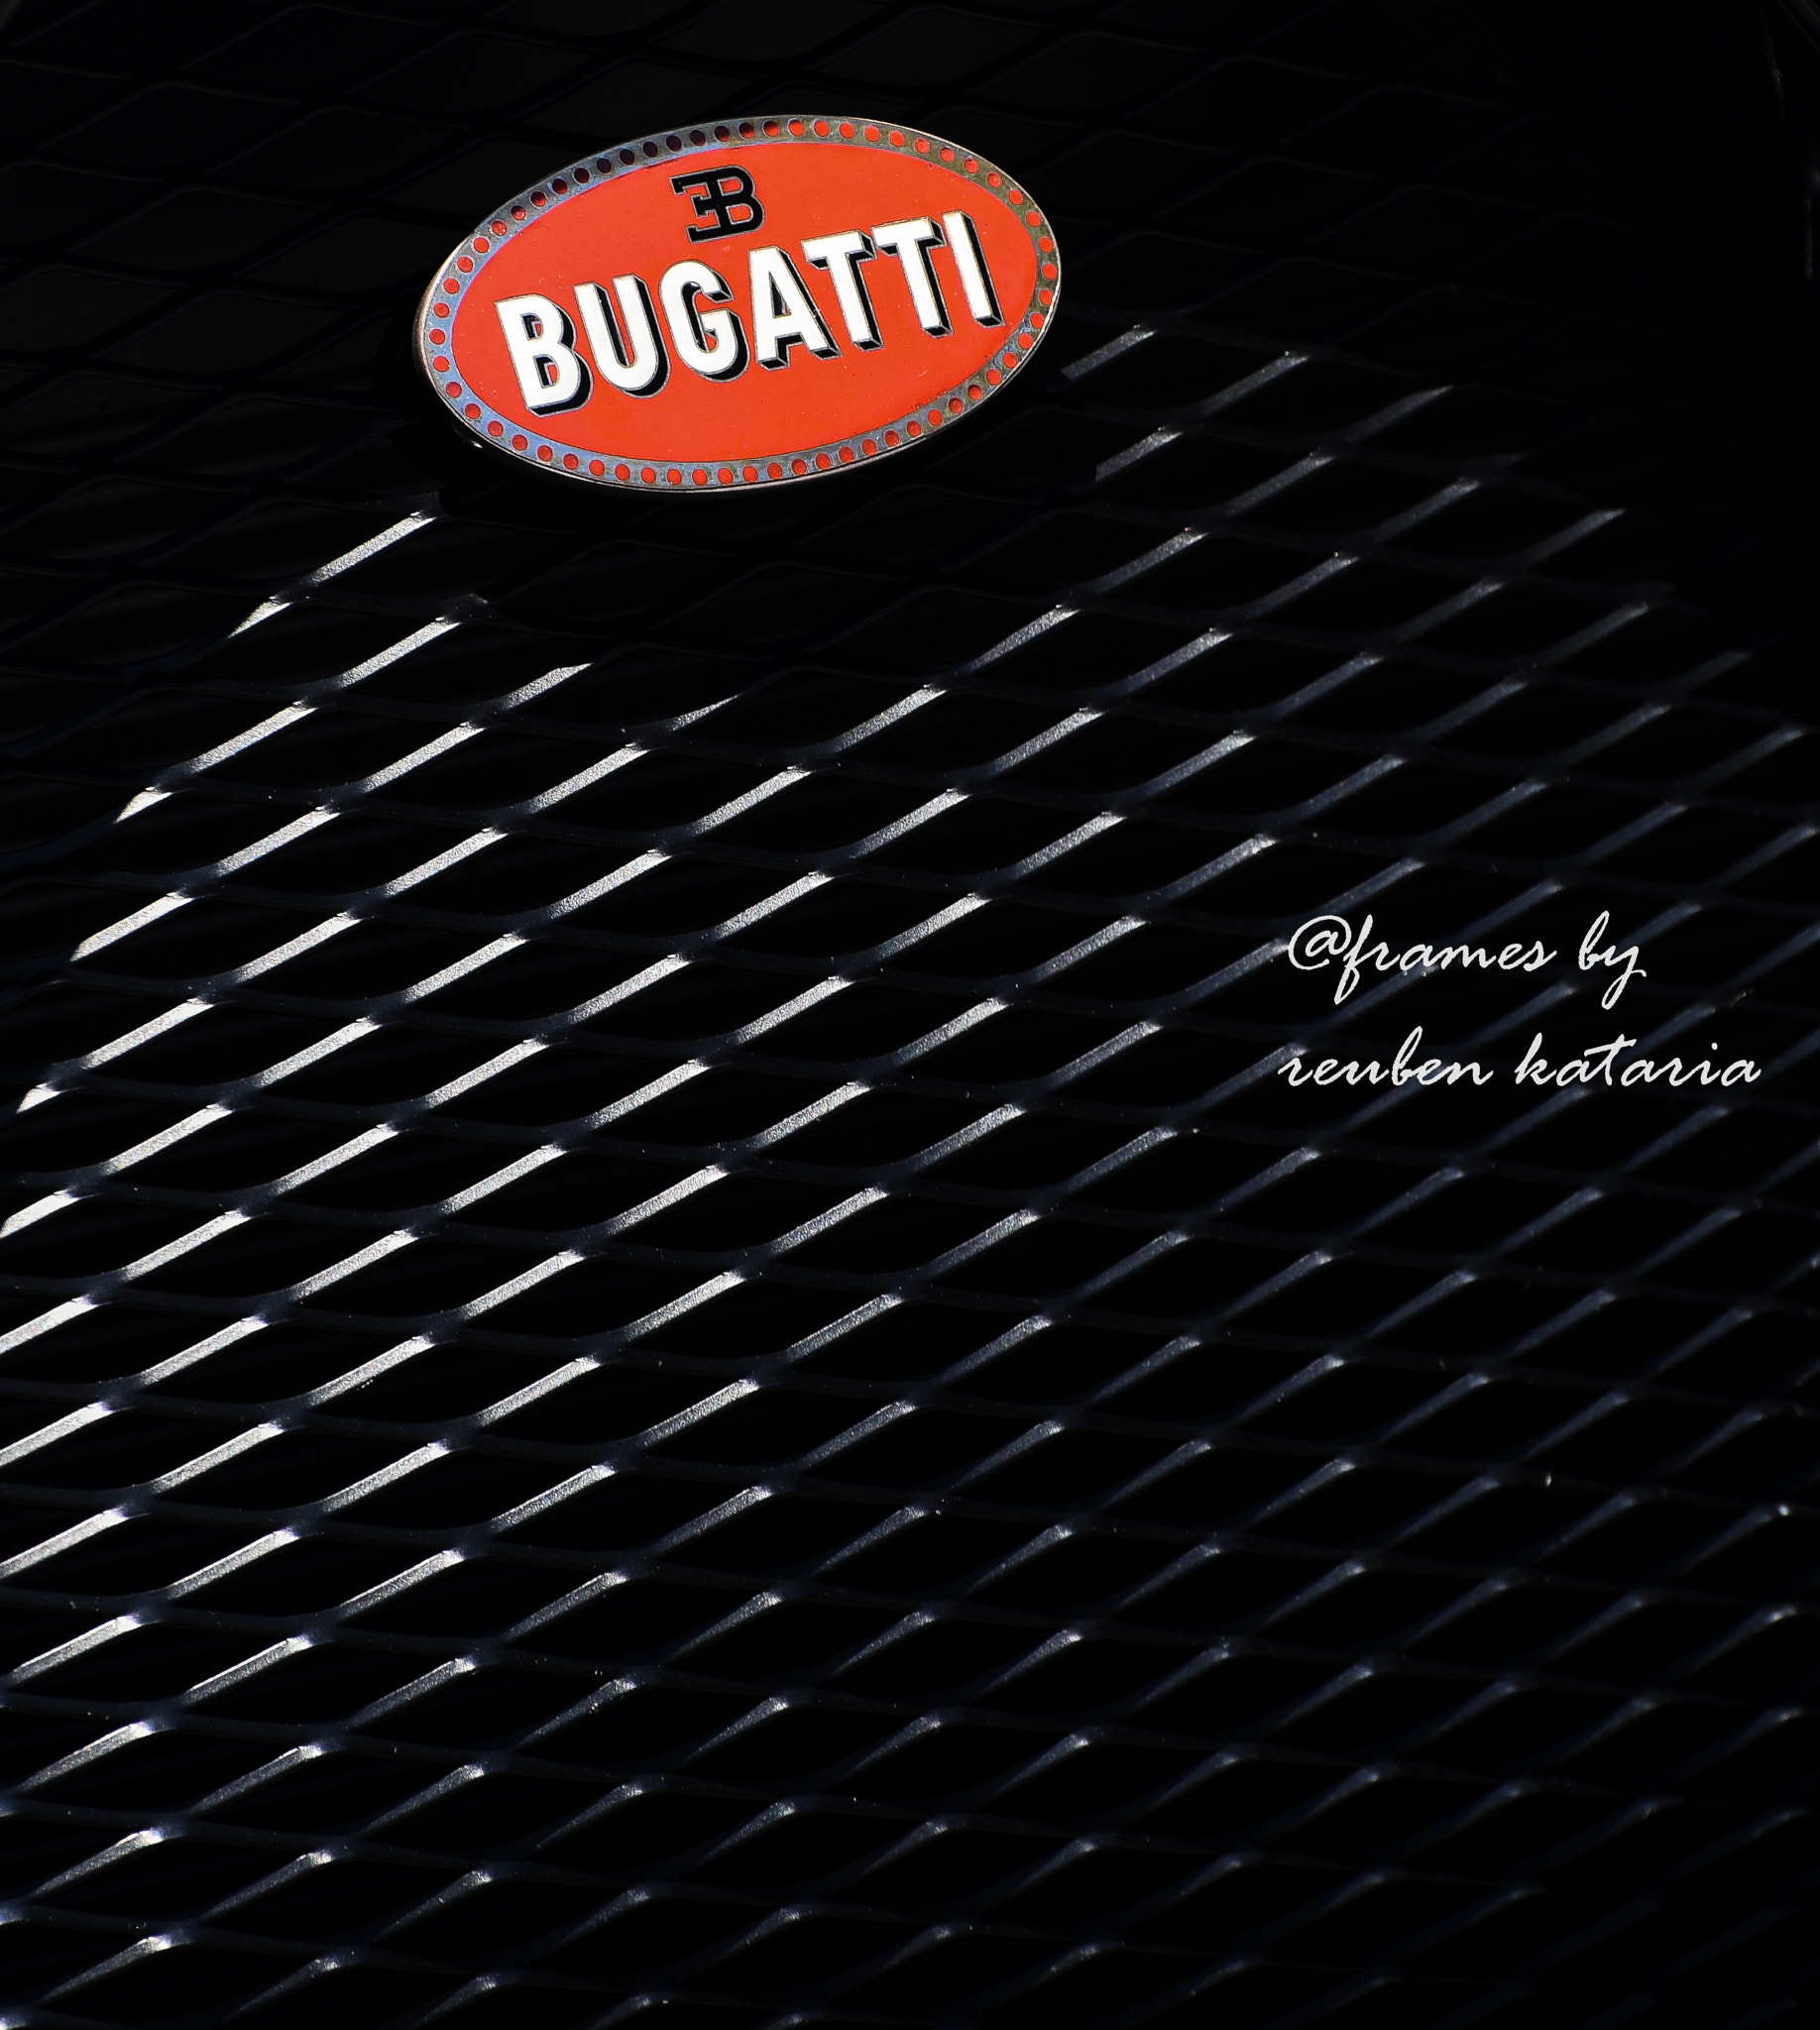 Nikon D810 sample photo. Bugatti photography